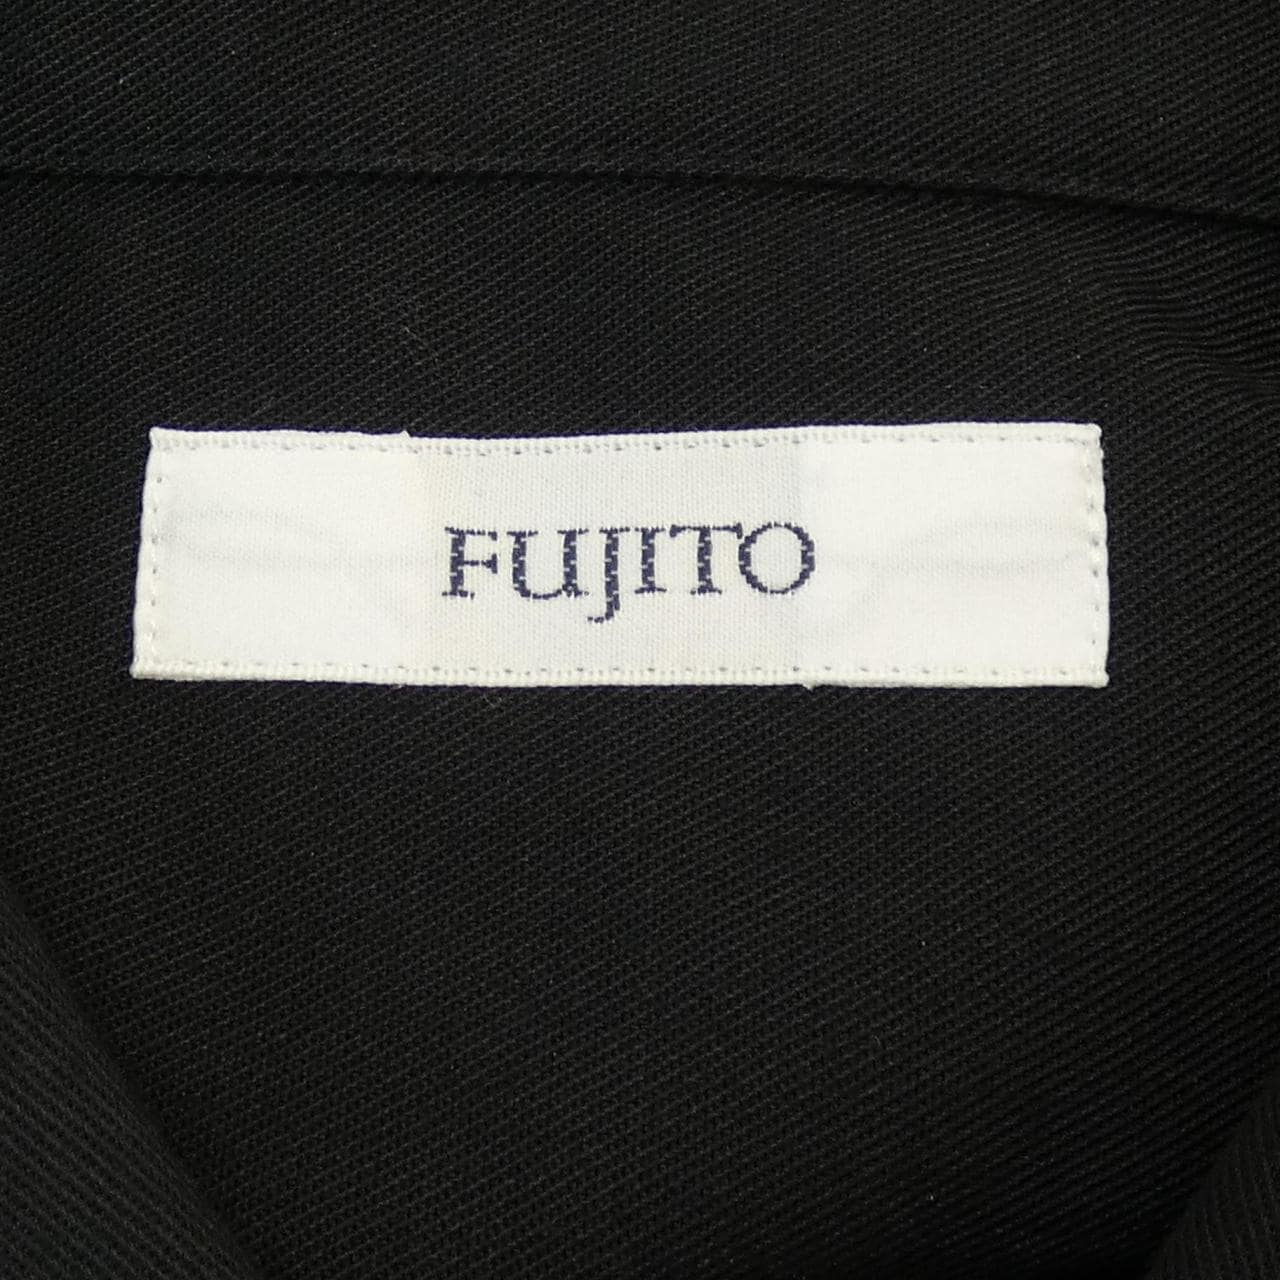 FUJITO シャツ